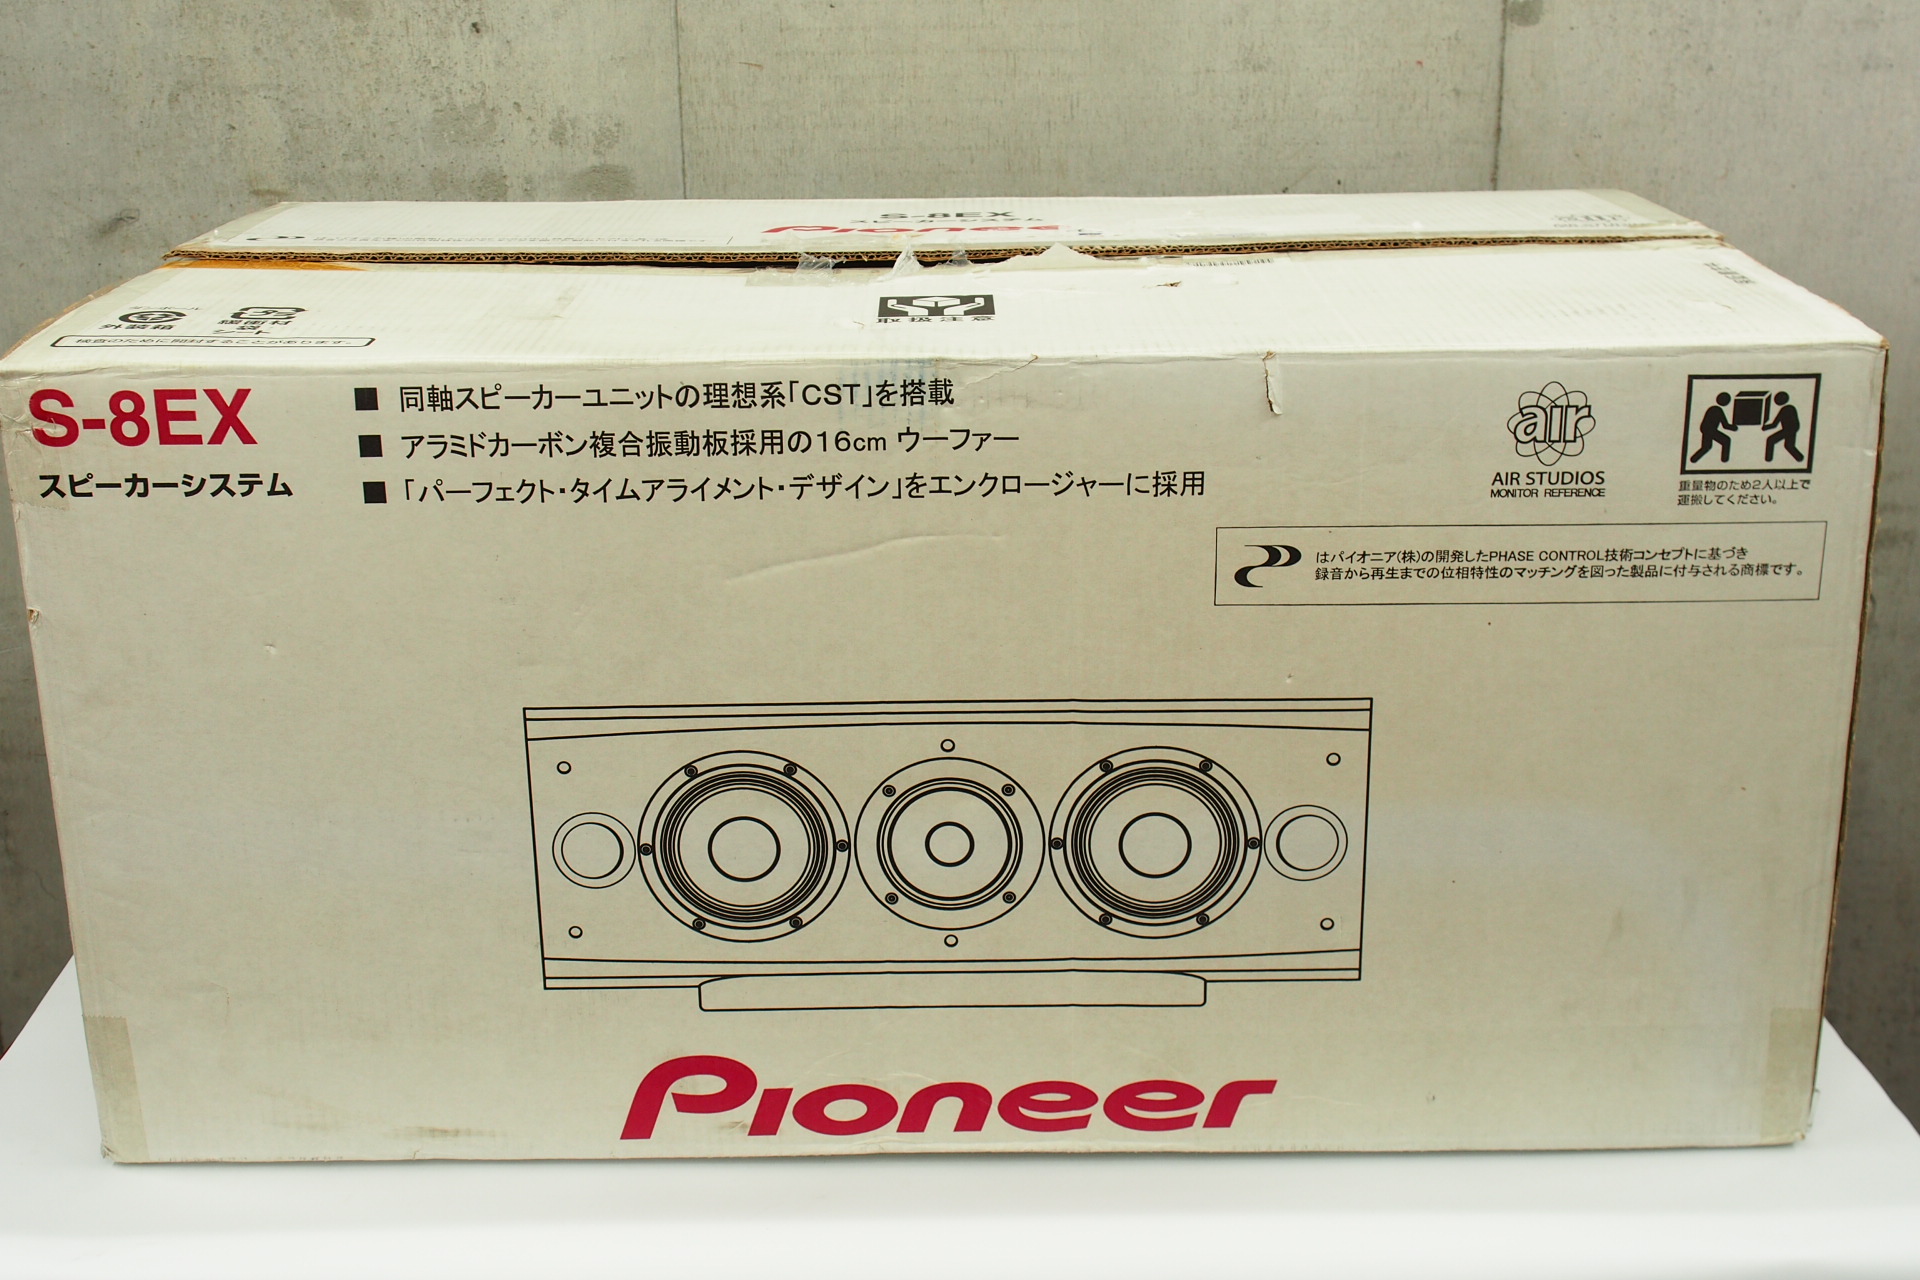 アバックWEB-SHOP / 【中古】Pioneer S-8EX【コード01-08415】